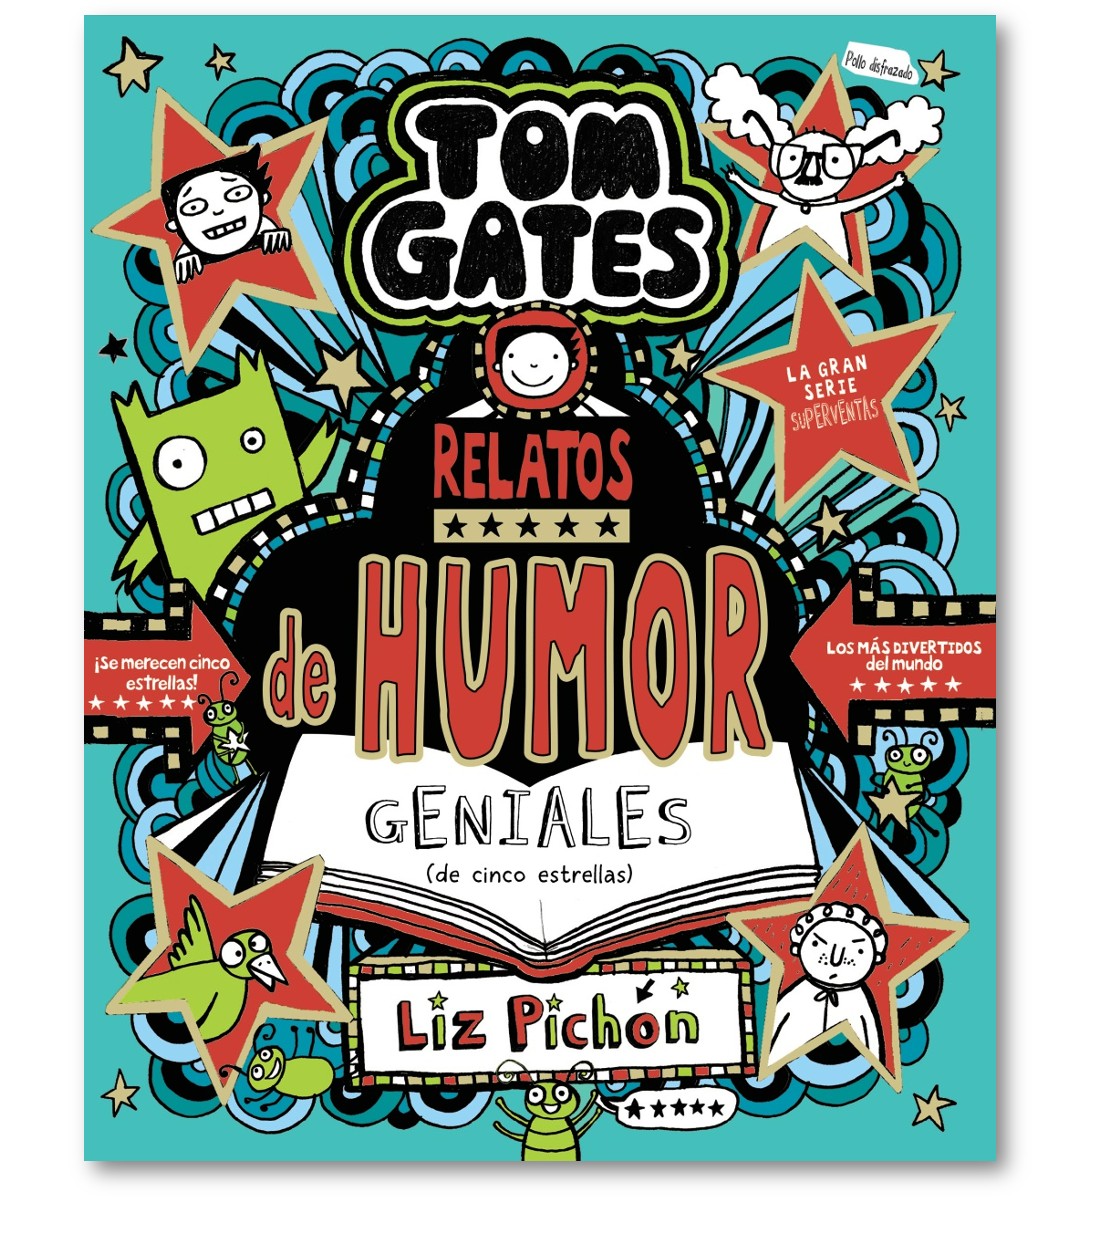 Tom Gates, 21. Relatos de humor geniales (de cinco estrellas)